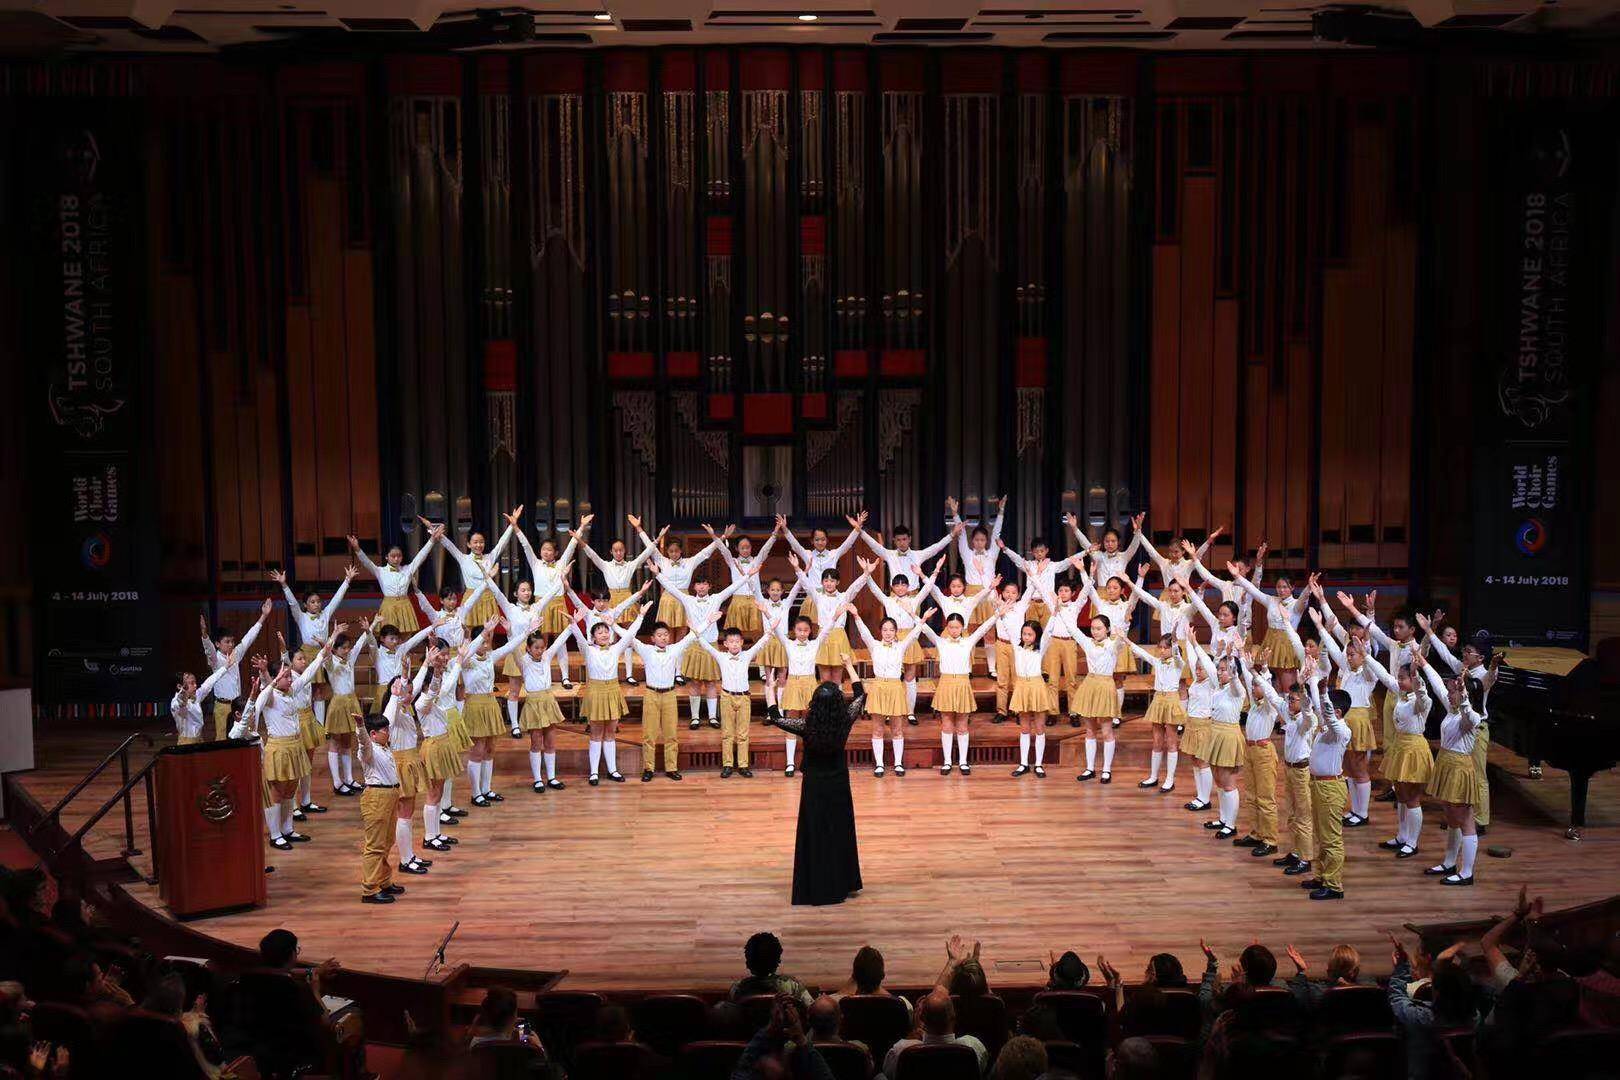 旅欧女中音歌唱家朱慧玲将担任独唱,中央音乐学院合唱团,广州大剧院